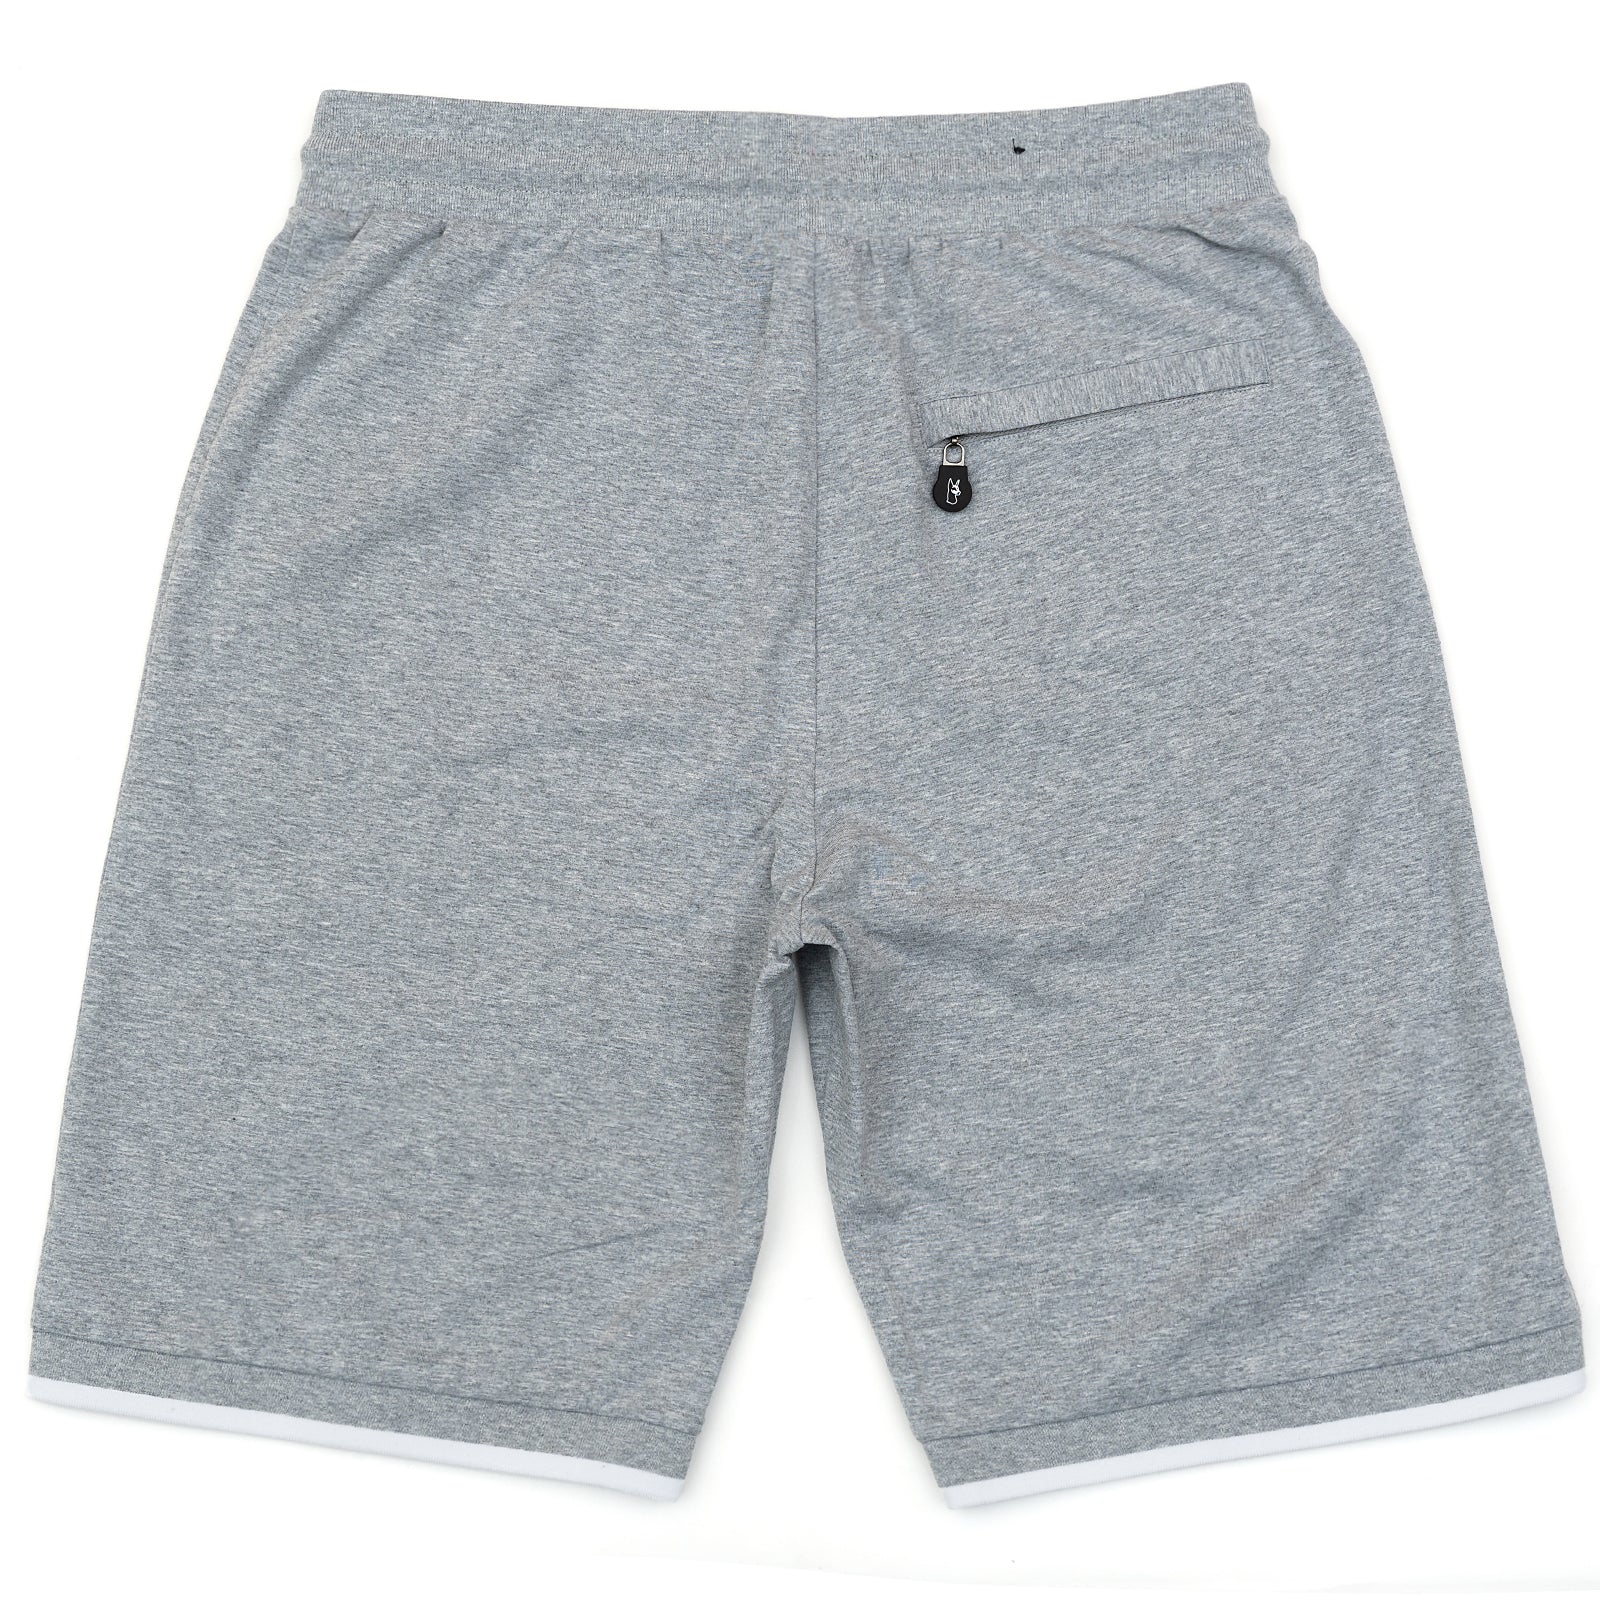 M601 Makobi Ricci Core Shorts - Gray